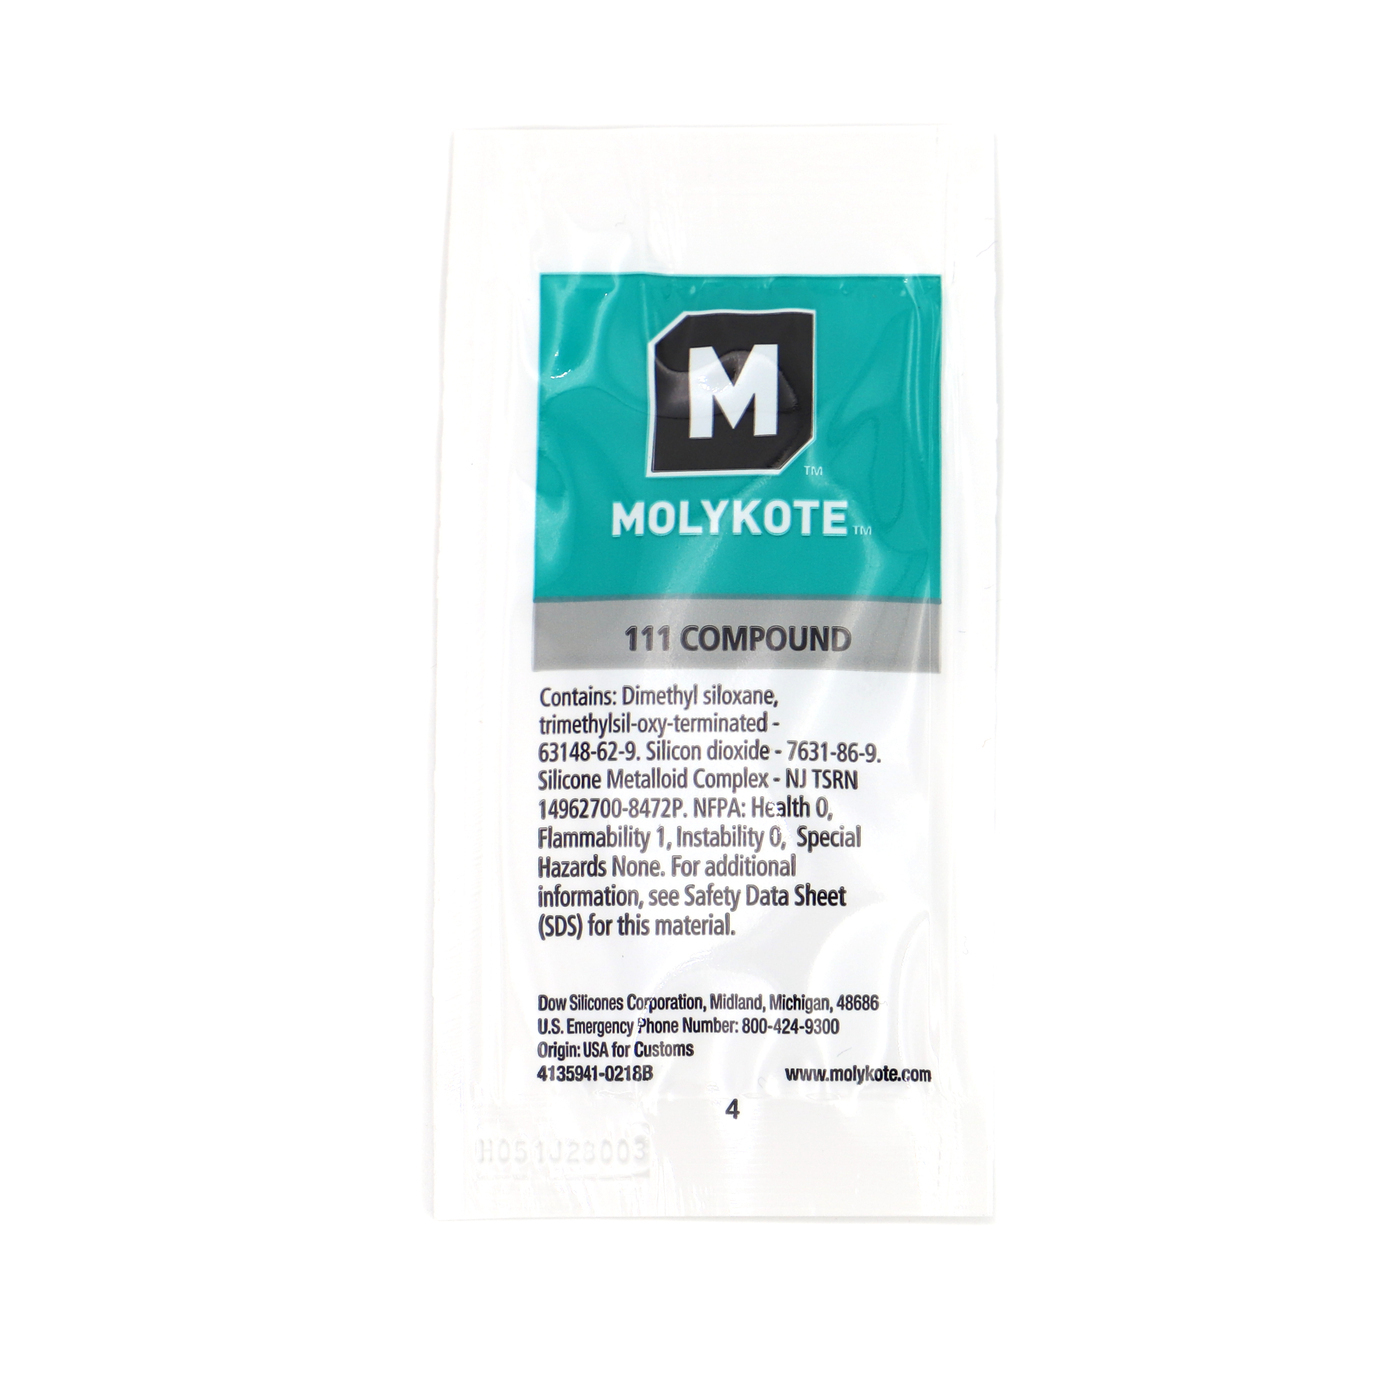 Molykote 111 Compound Schmier- und Dichtmittel für Ventile 6g in Siegelrandbeutel